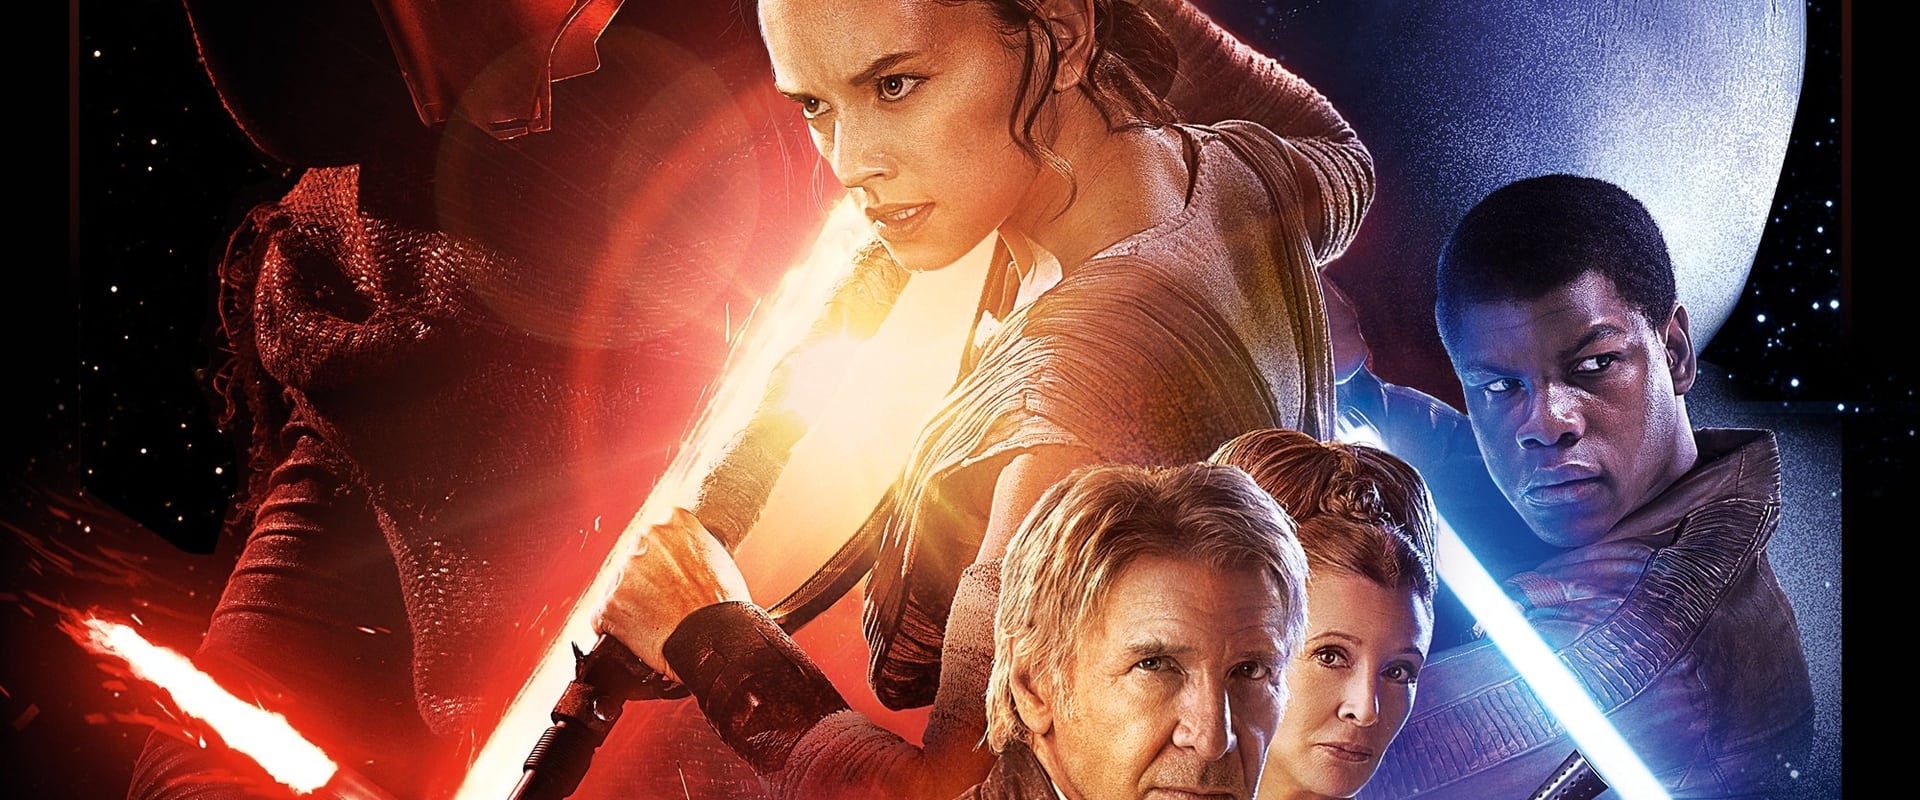 Star Wars – Episodio VII: Il risveglio della forza [HD] (2015)